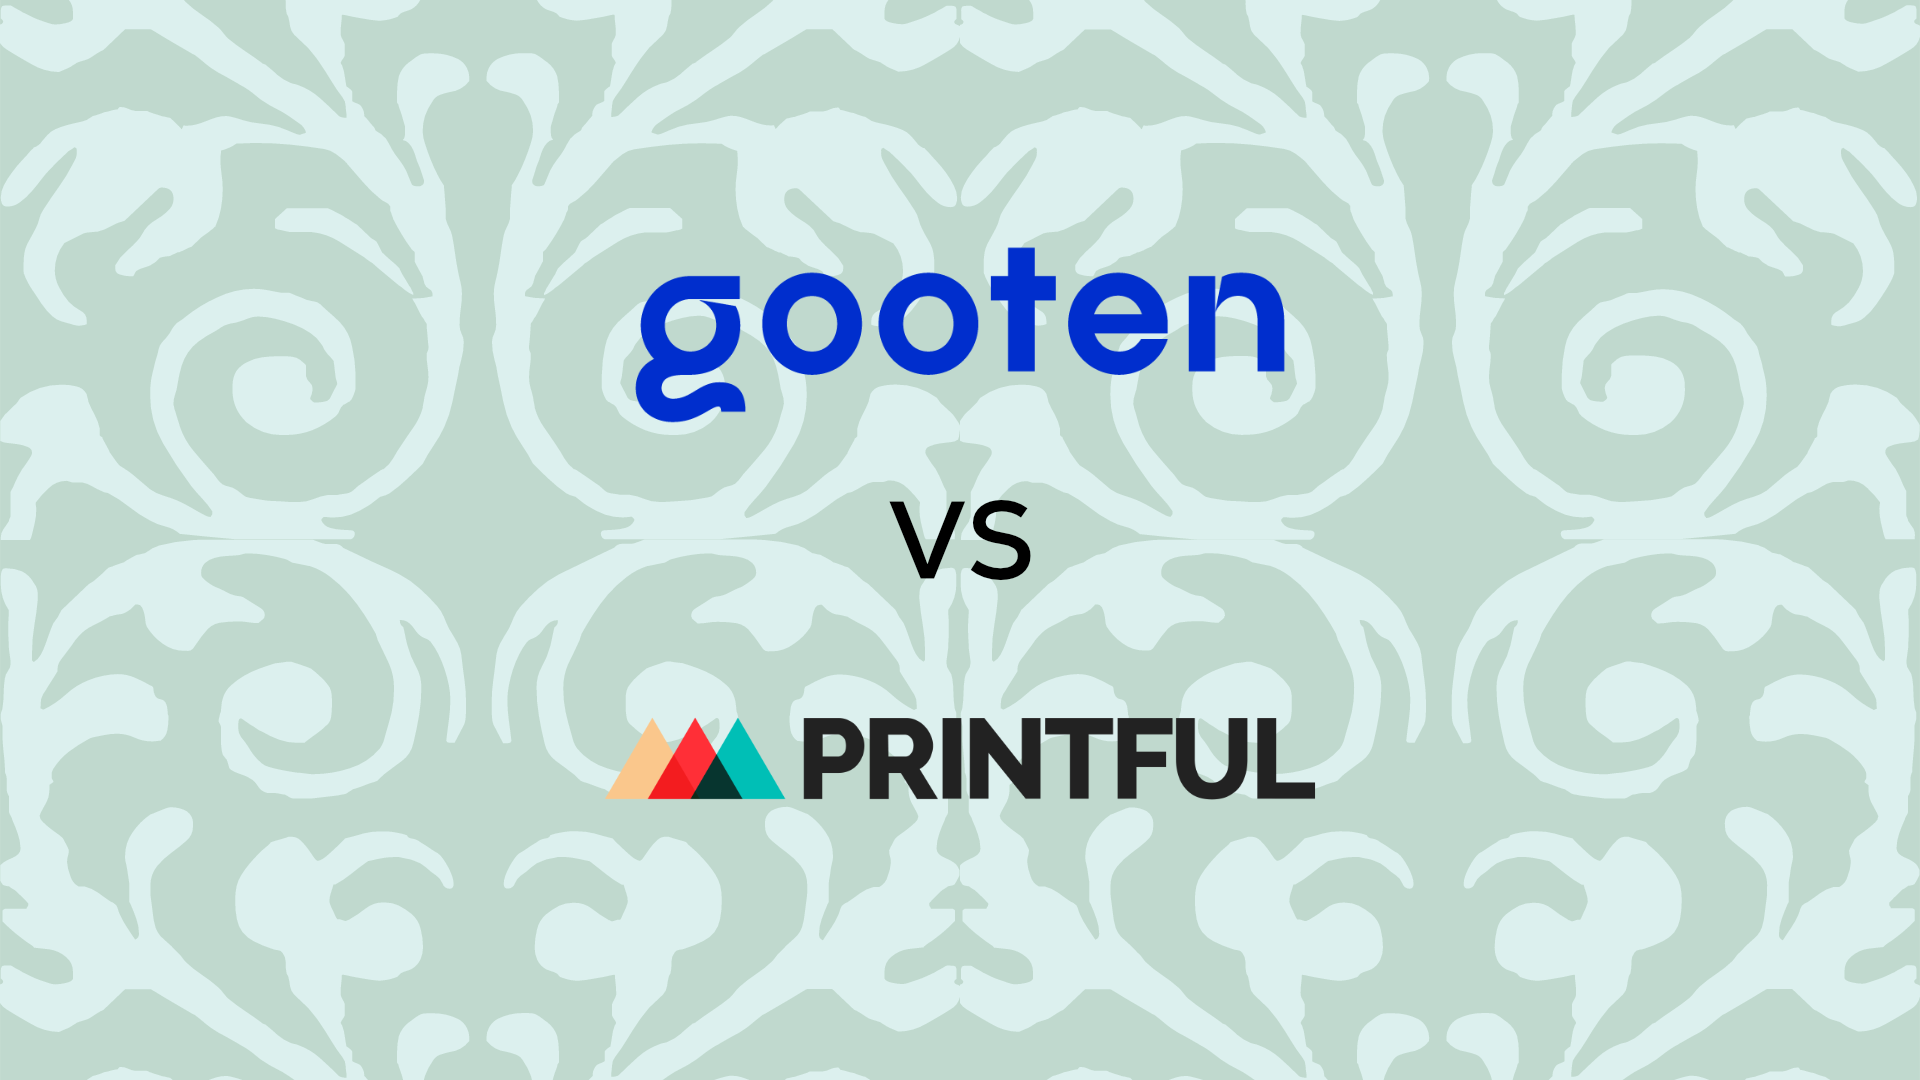 Gooten vs Printful - Which Should You Choose?